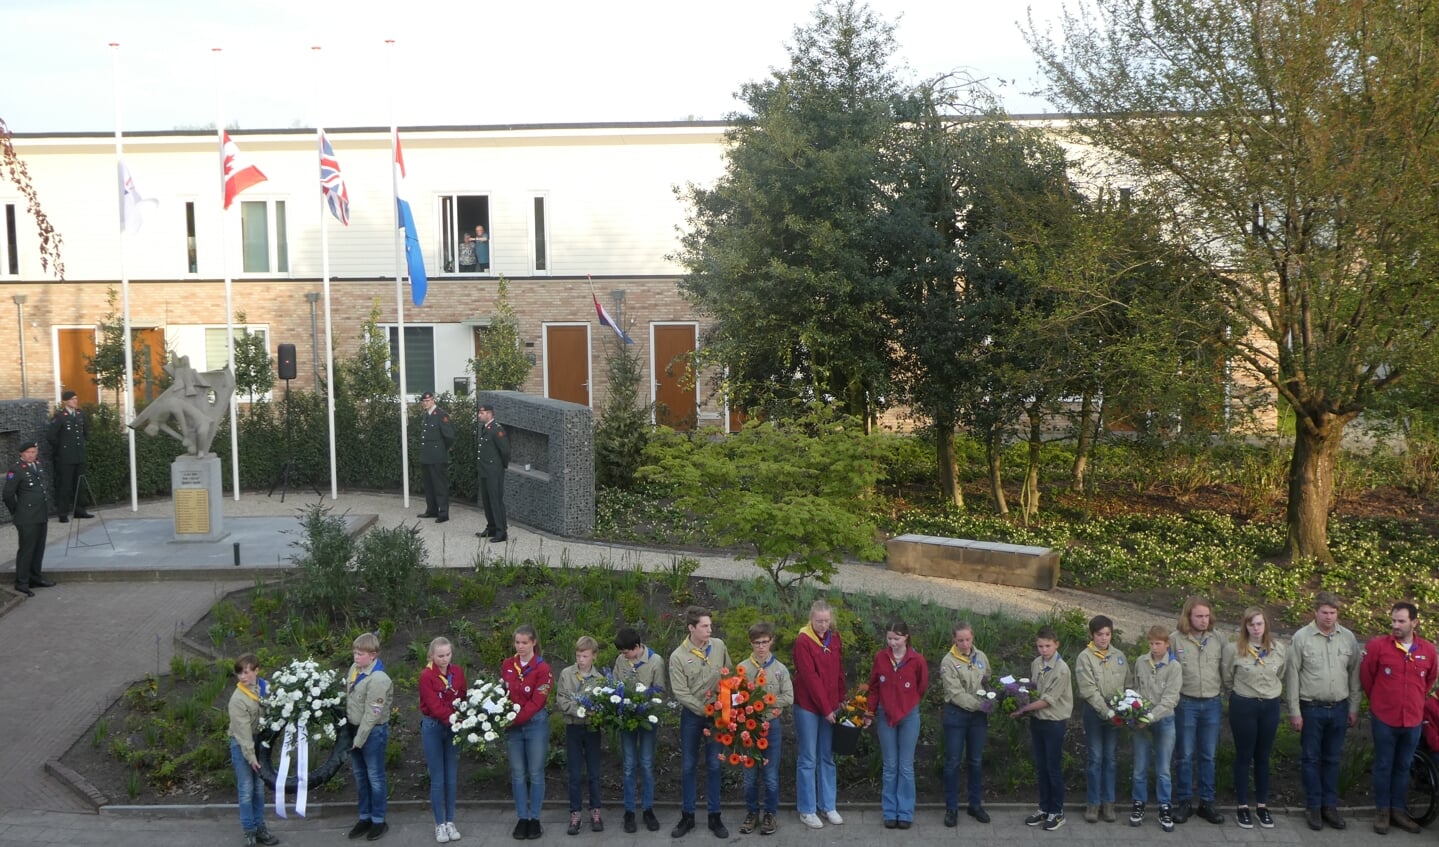 Leden van Scouting Lochem verleenden medewerking aan de krans- en bloemleggingen. Foto's: Jan Hendriksen